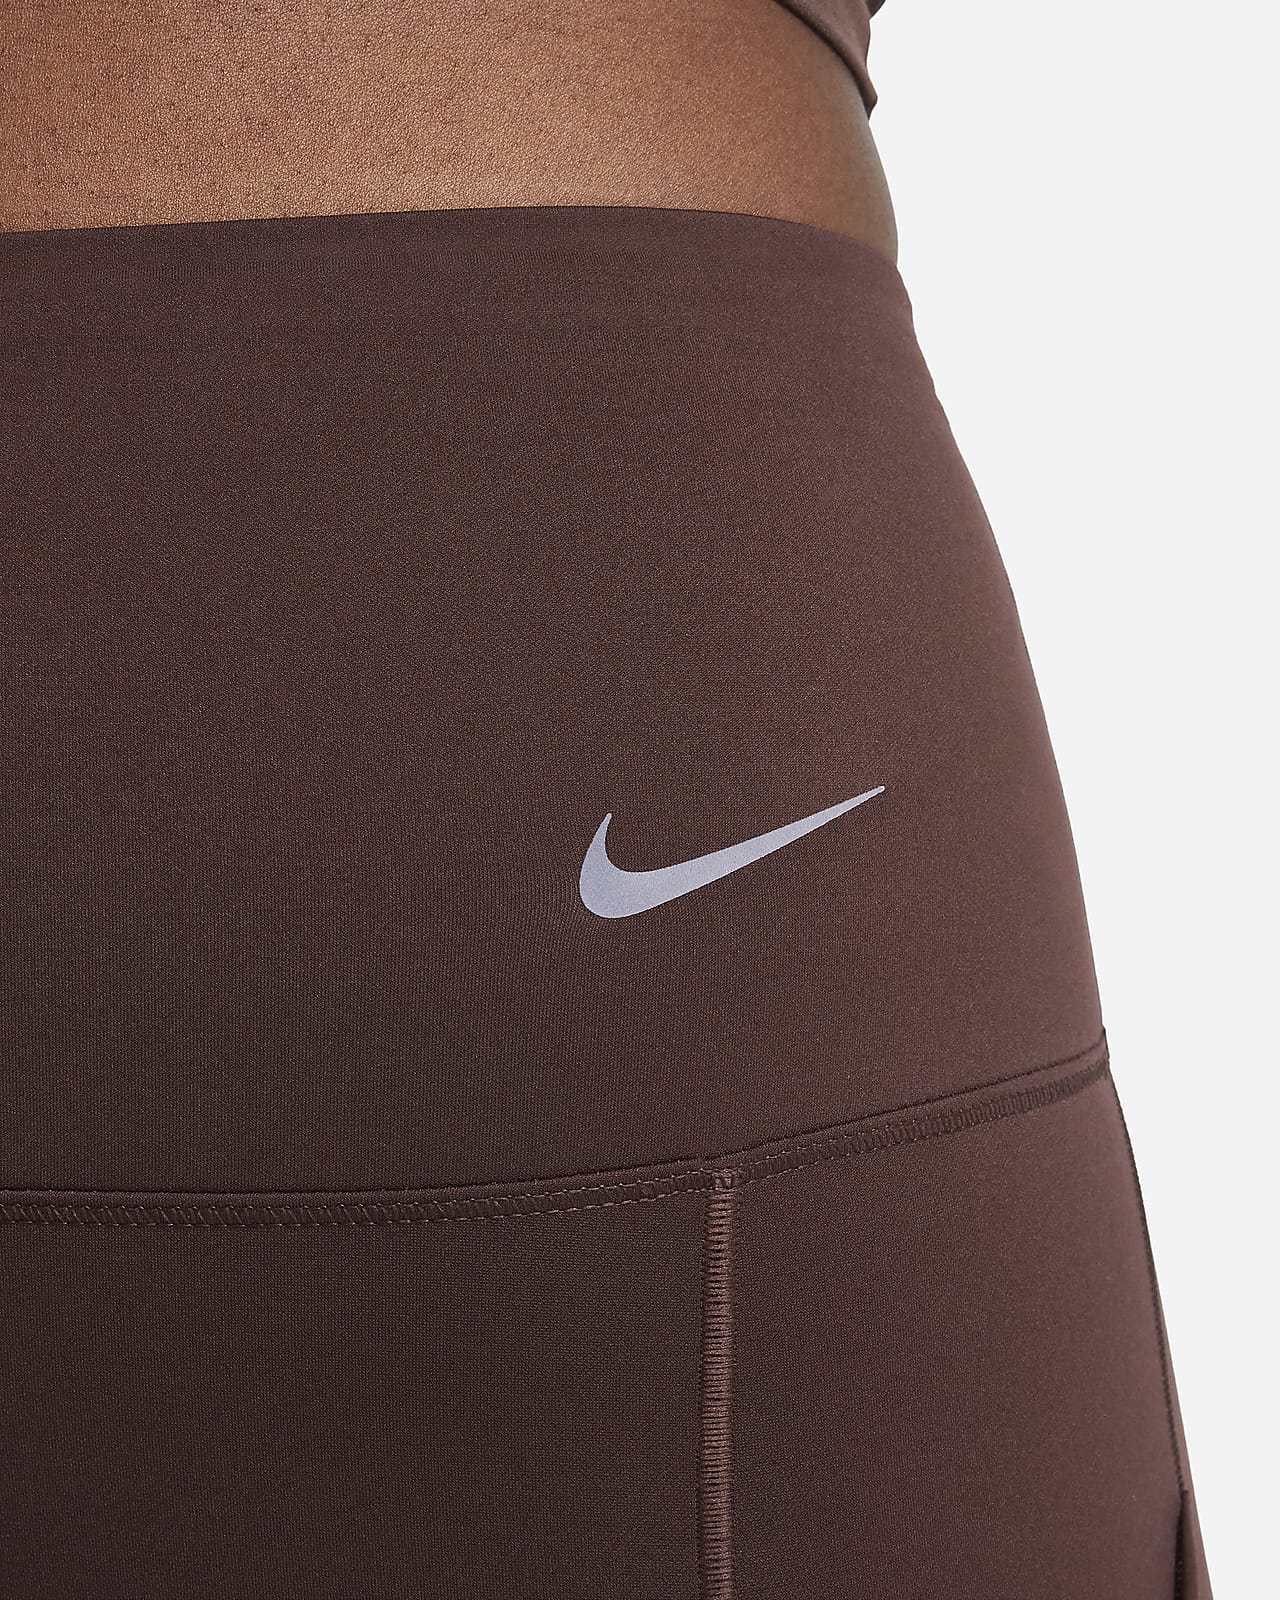 Nike - New Nike Leggings on Designer Wardrobe